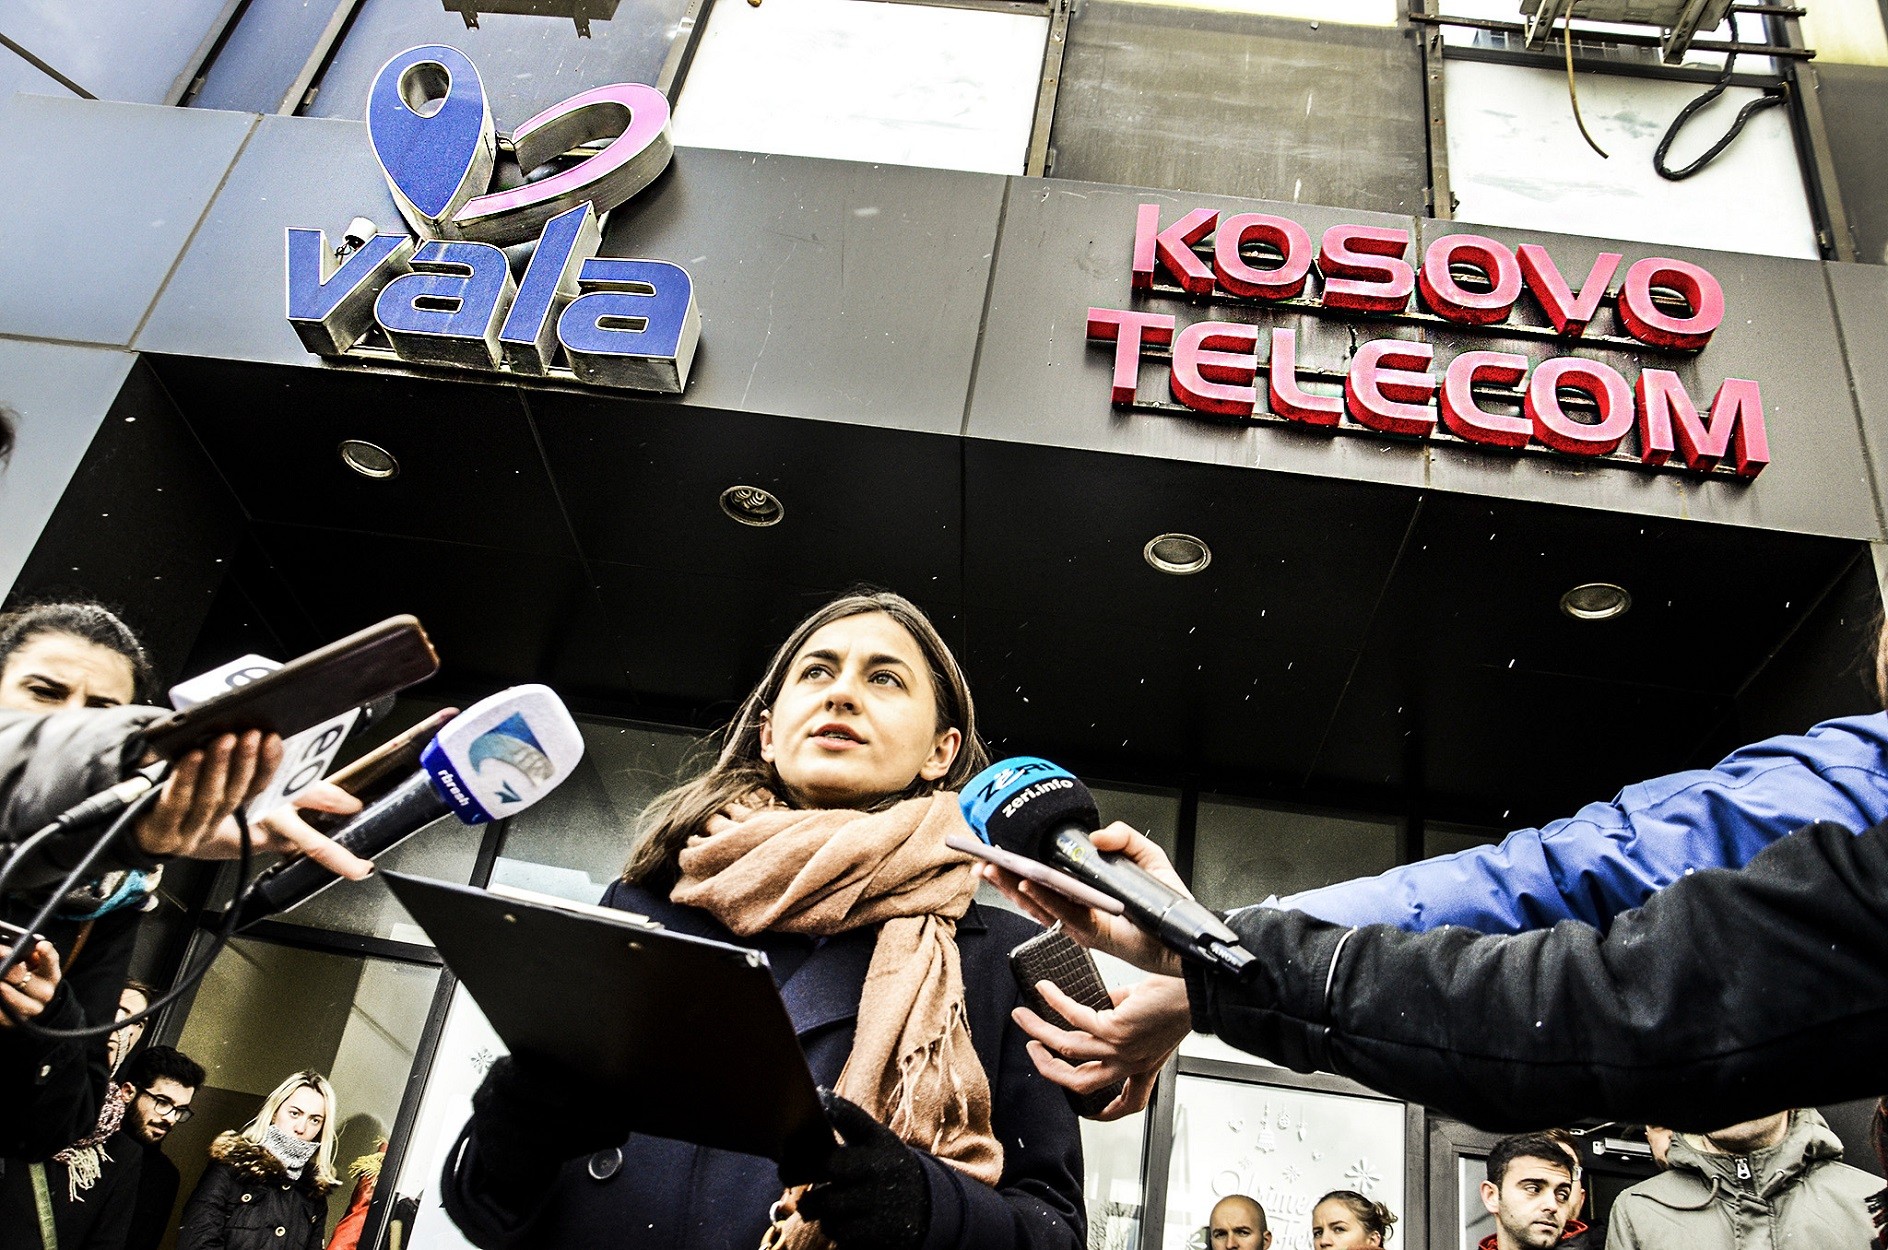 VV i bën thirrje prokurorisë të hetojë punësimet partiake në Telekom